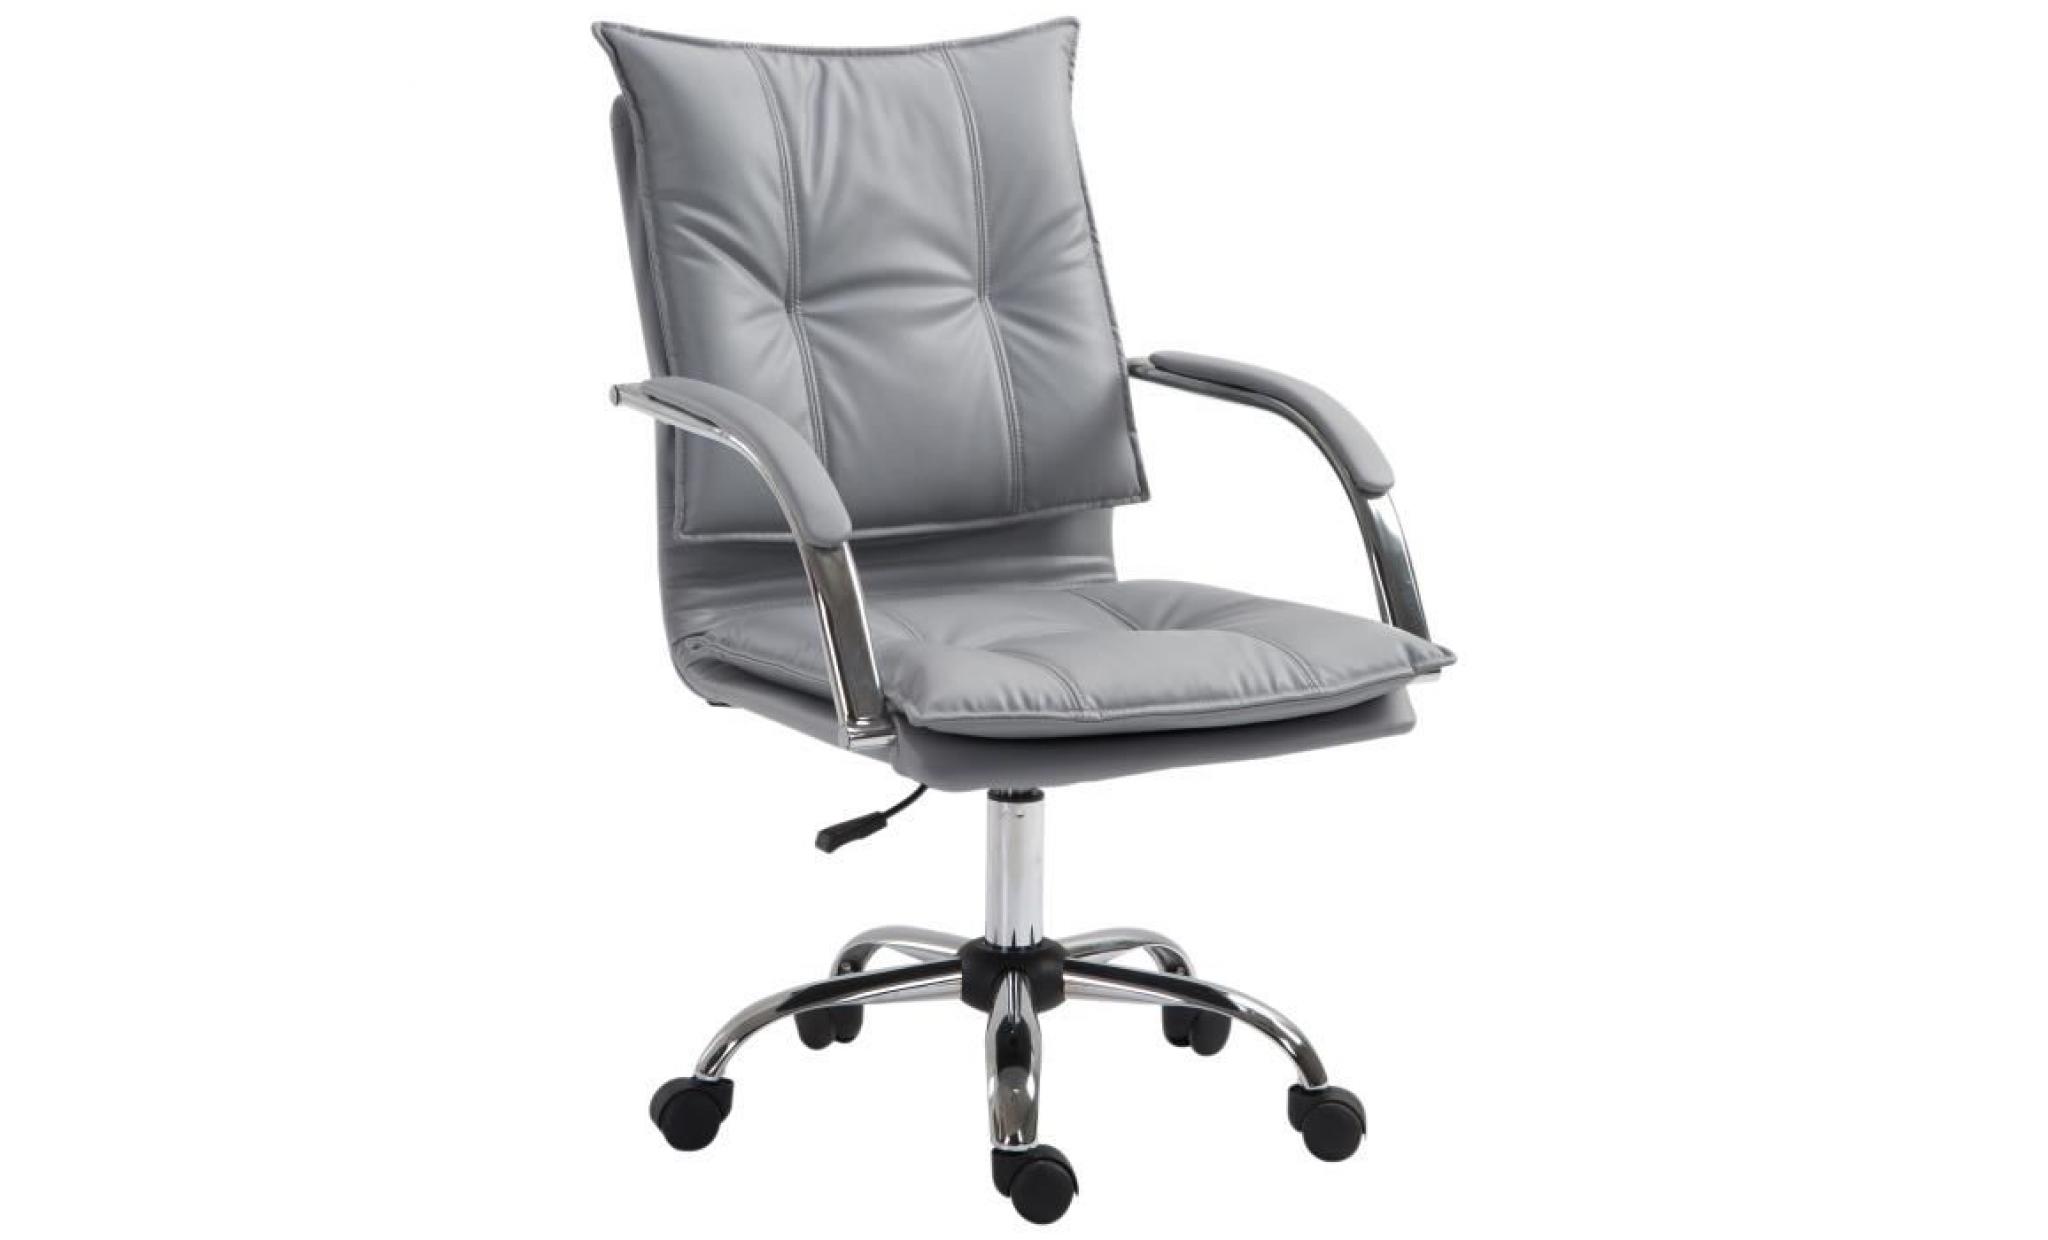 fauteuil chaise de bureau manager grand confort rembourrage haute densité assise dossier accoudoirs simili cuir gris 64x57x58cm gris